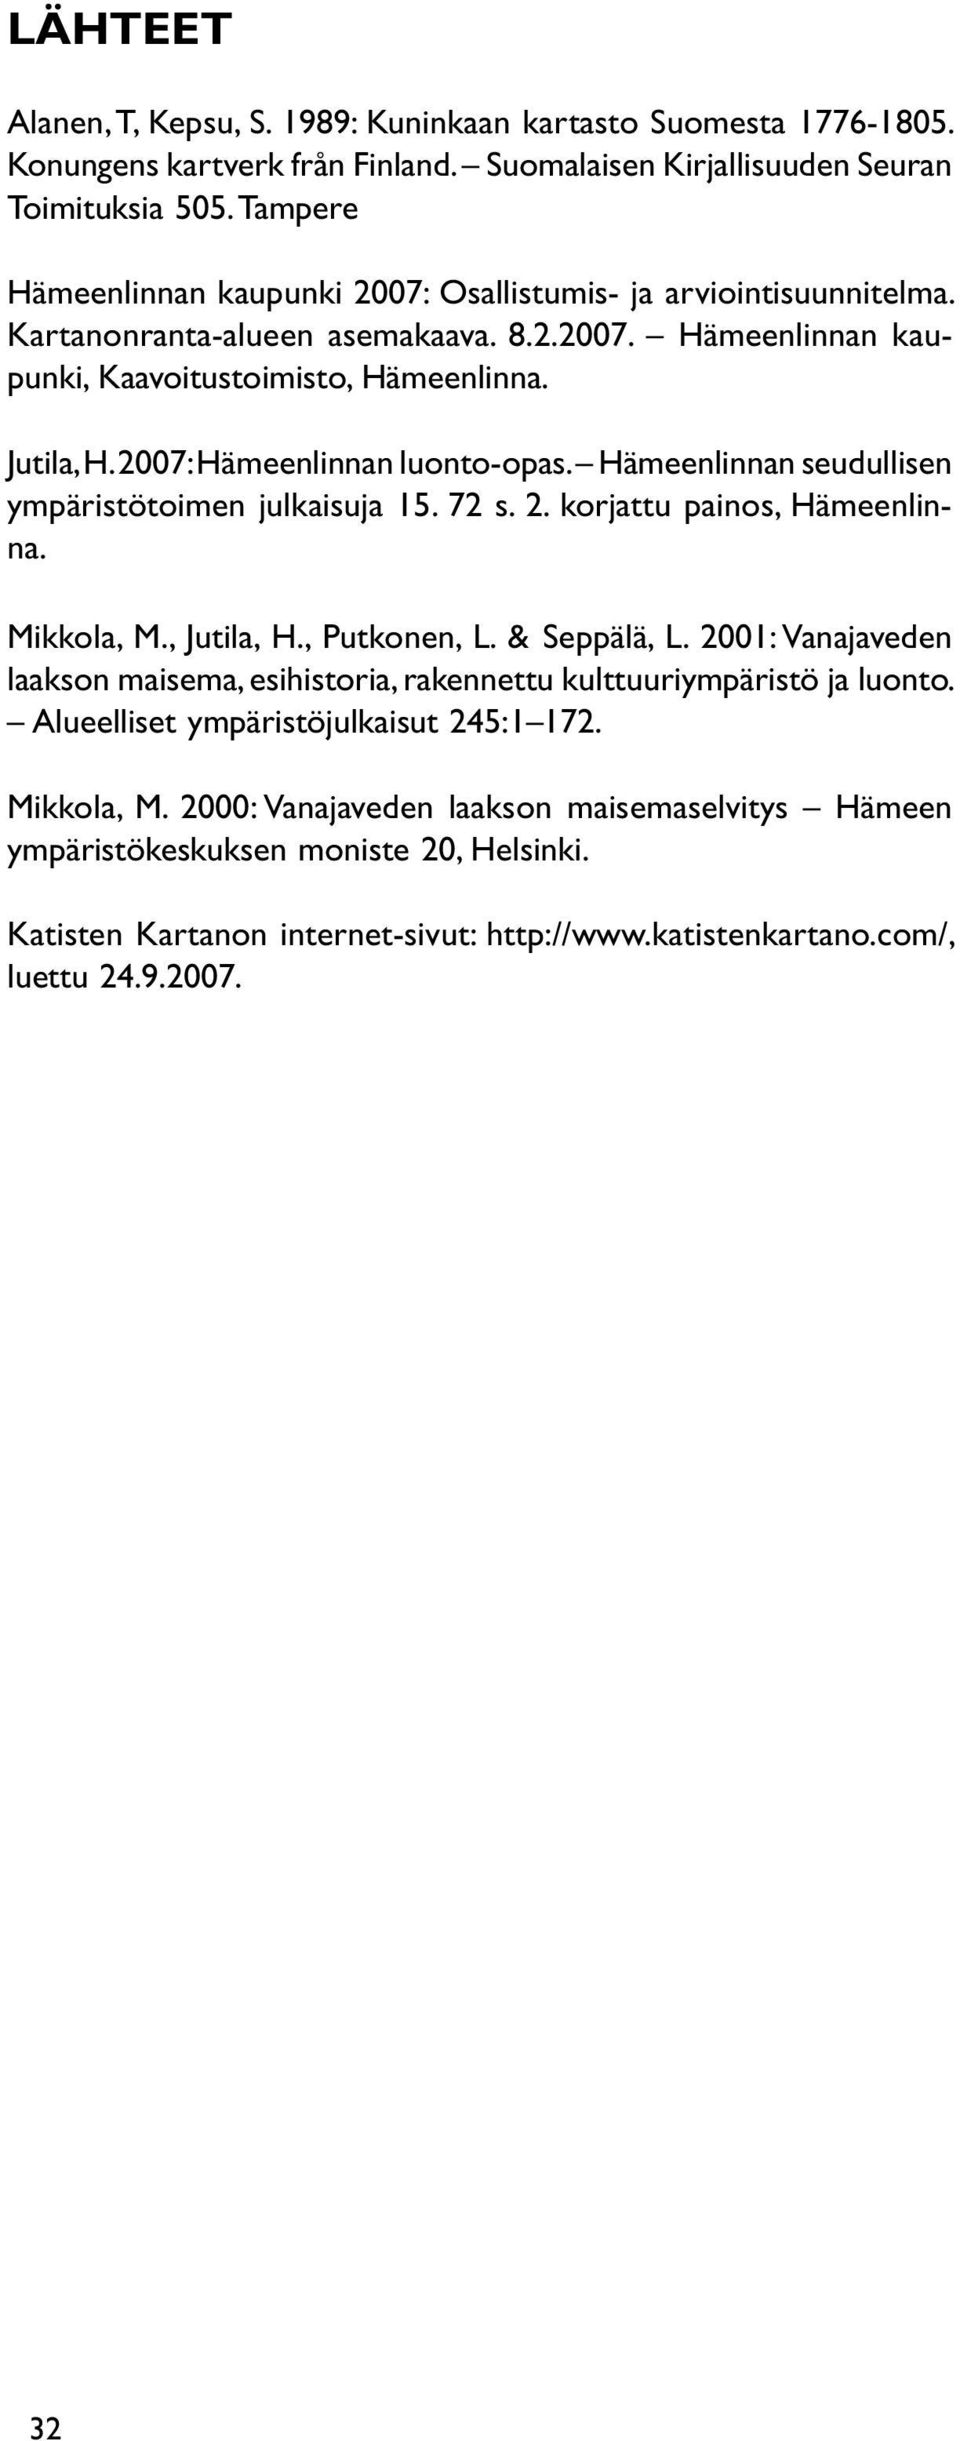 2007: Hämeenlinnan luonto-opas. Hämeenlinnan seudullisen ympäristötoimen julkaisuja 15. 72 s. 2. korjattu painos, Hämeenlinna. Mikkola, M., Jutila, H., Putkonen, L. & Seppälä, L.